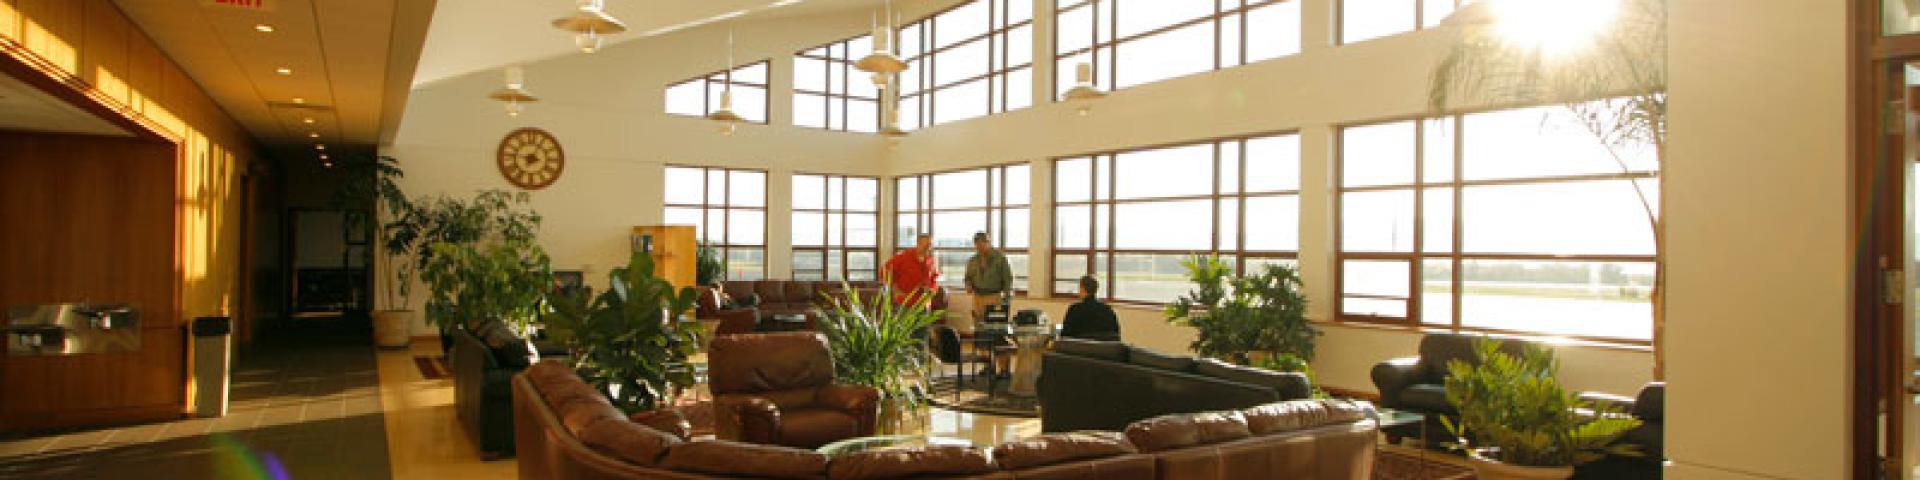 Aviation Center lobby